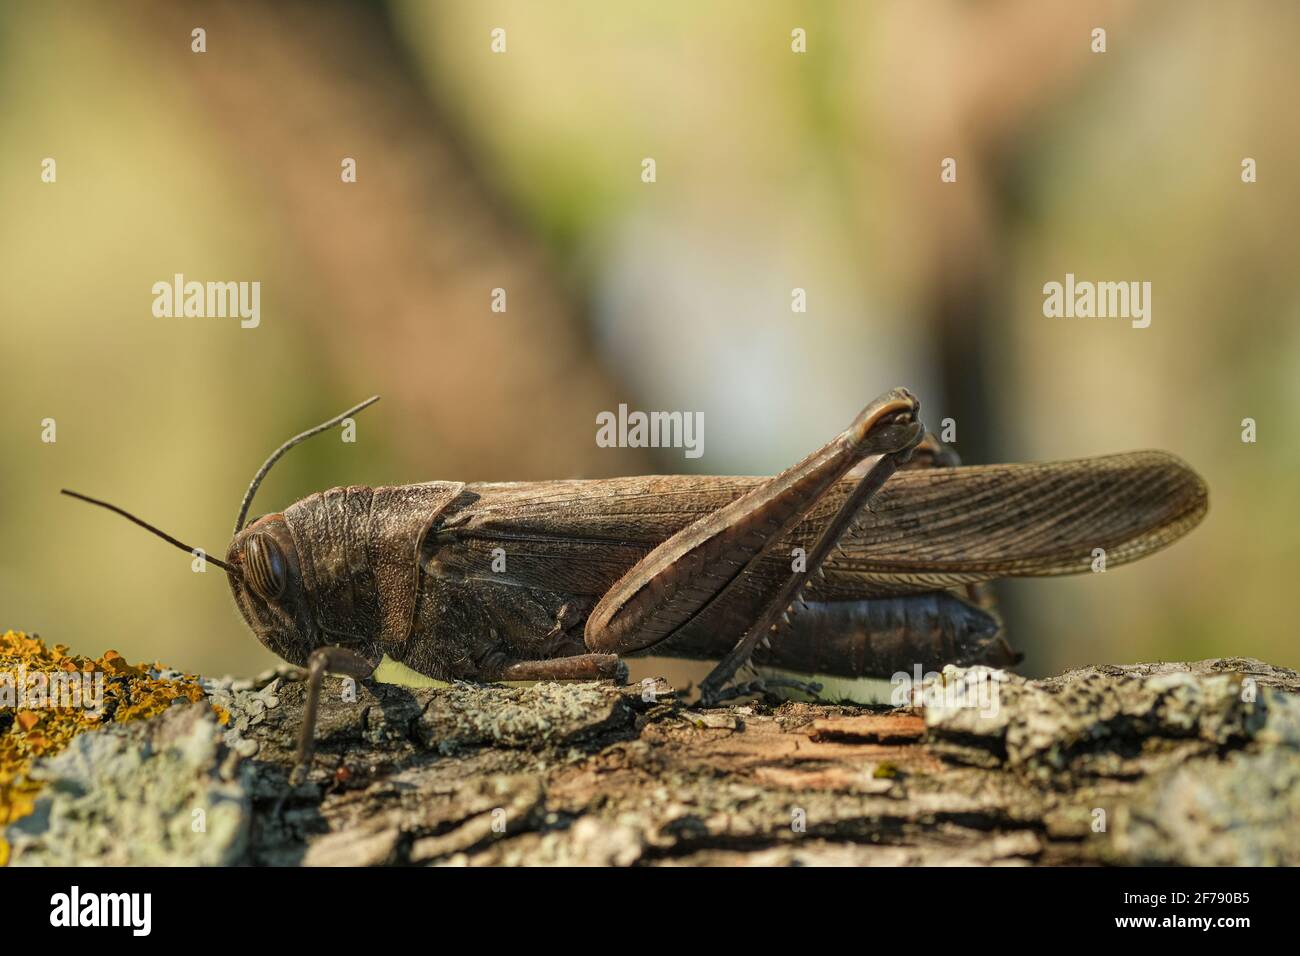 Isolierte Locust Insekten leben auf Baumstamm Lebensraum, Wildlife Makro Tier Stockfoto